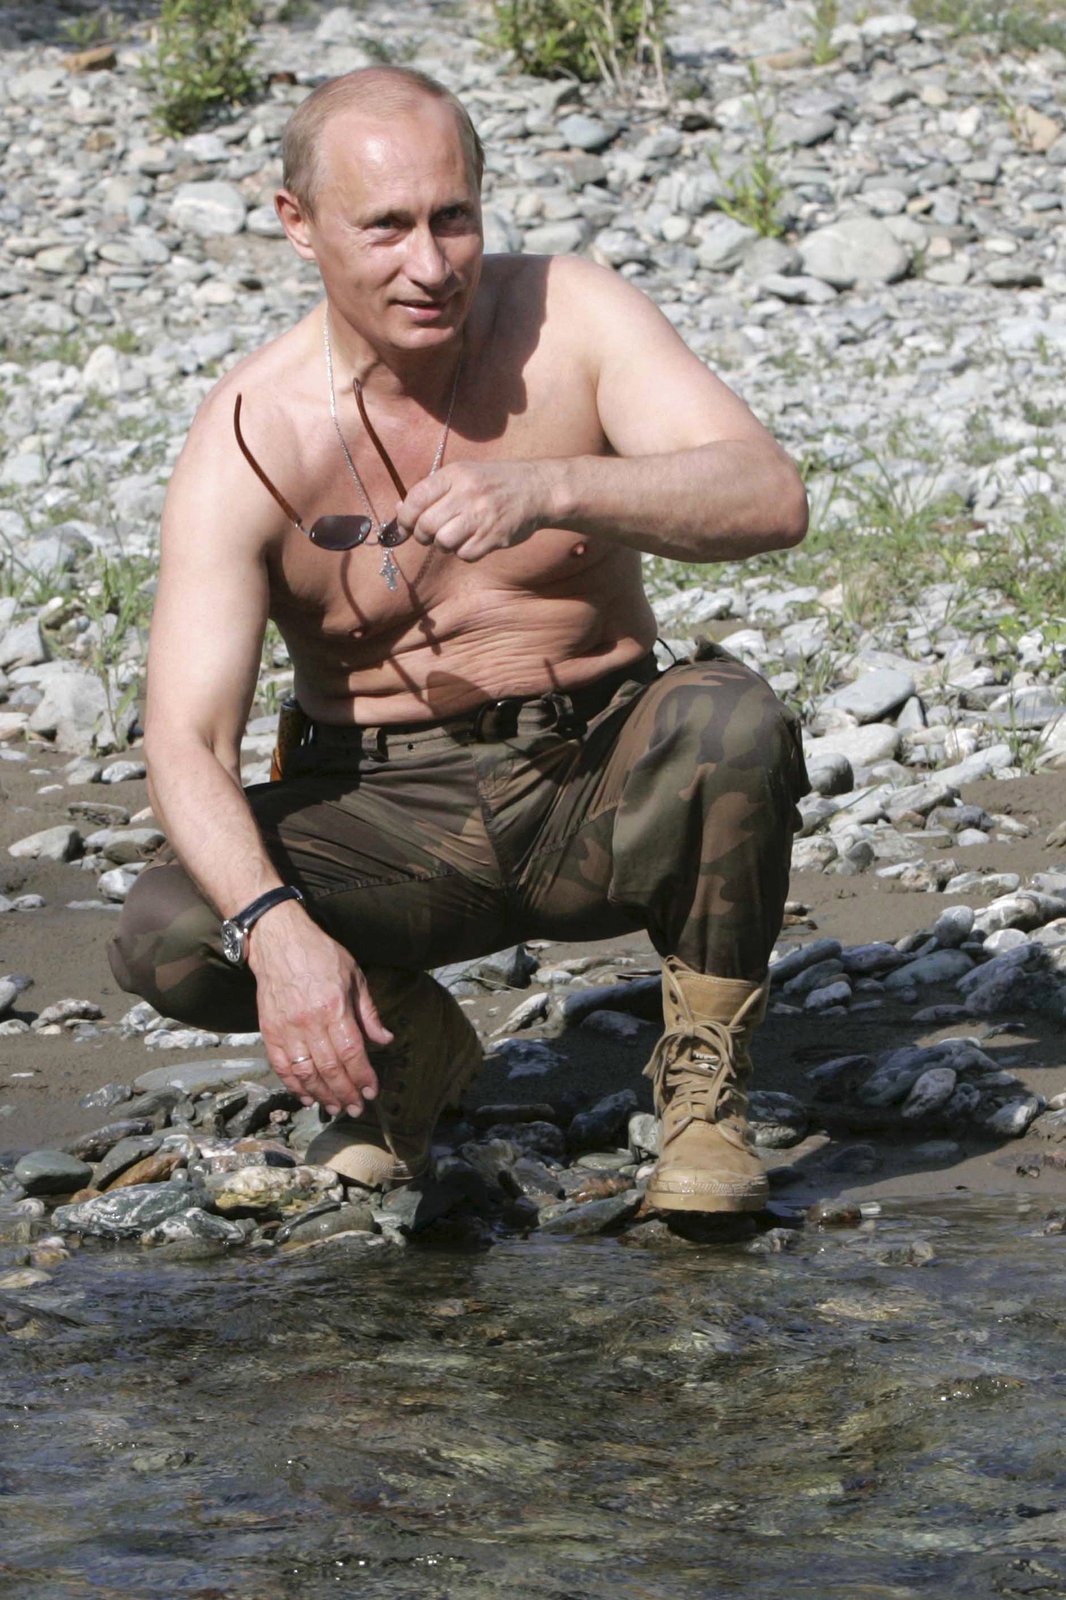 Své tělo dává Vladimir Vladimirovič na odiv tak často, jak je to jen možné. Když pózoval u řeky, odložil pohotově nejenom brýle, ale i vršek...